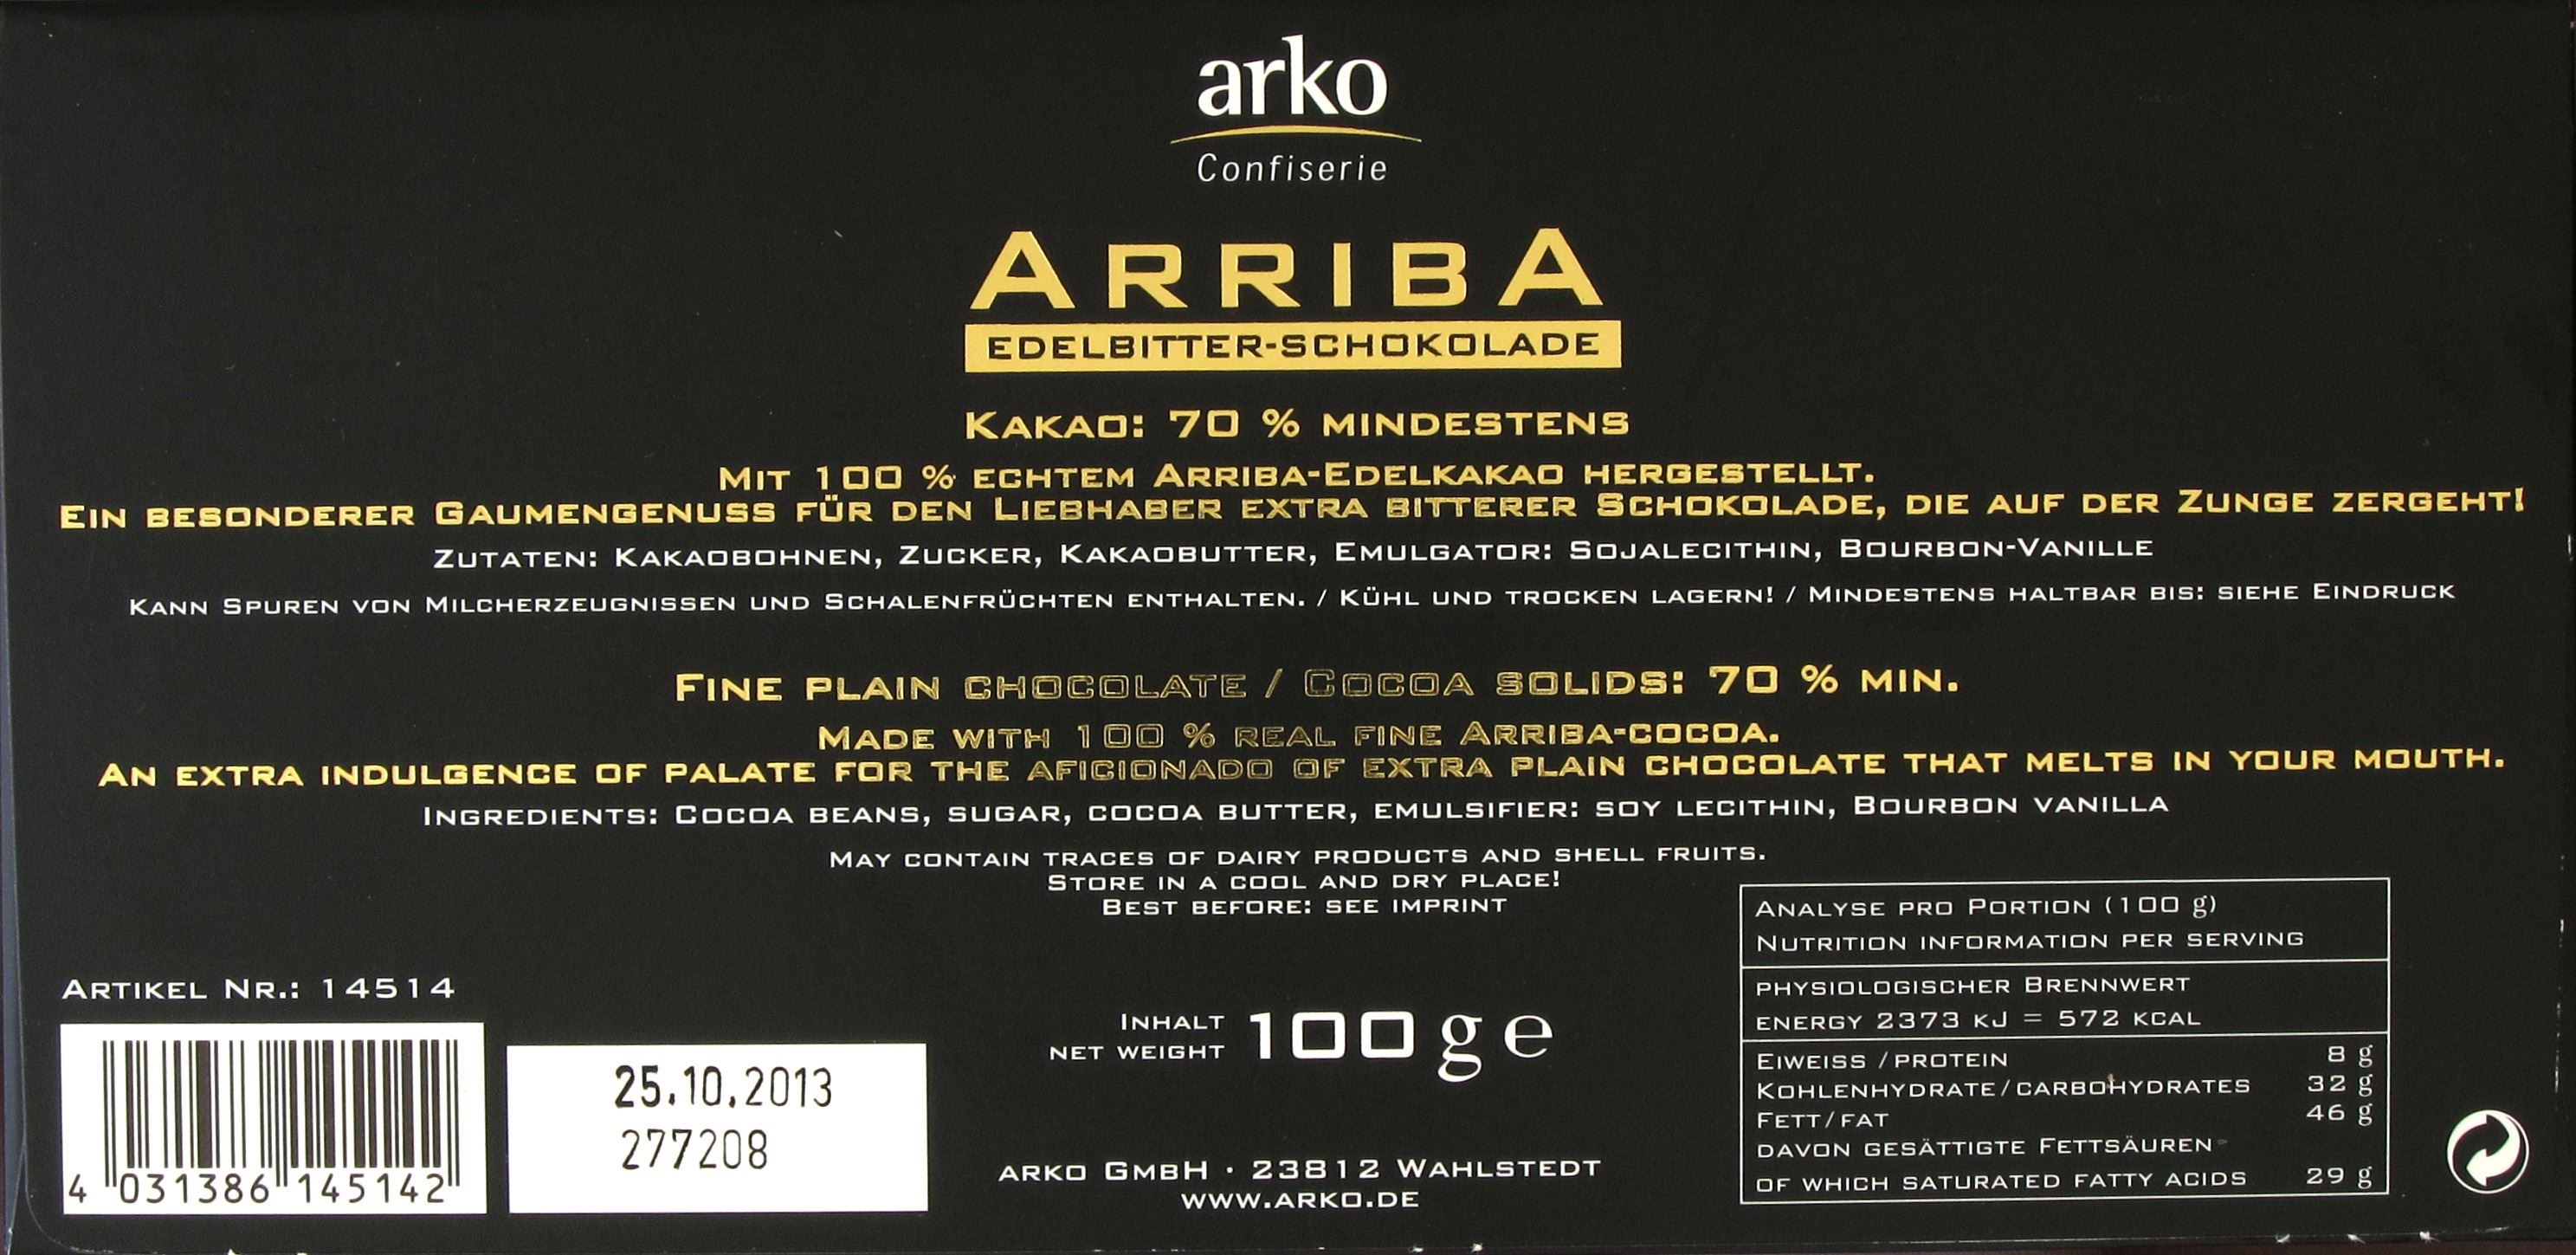 Rückseite einer Packung Arko Arriba Edelbitter Schokolade